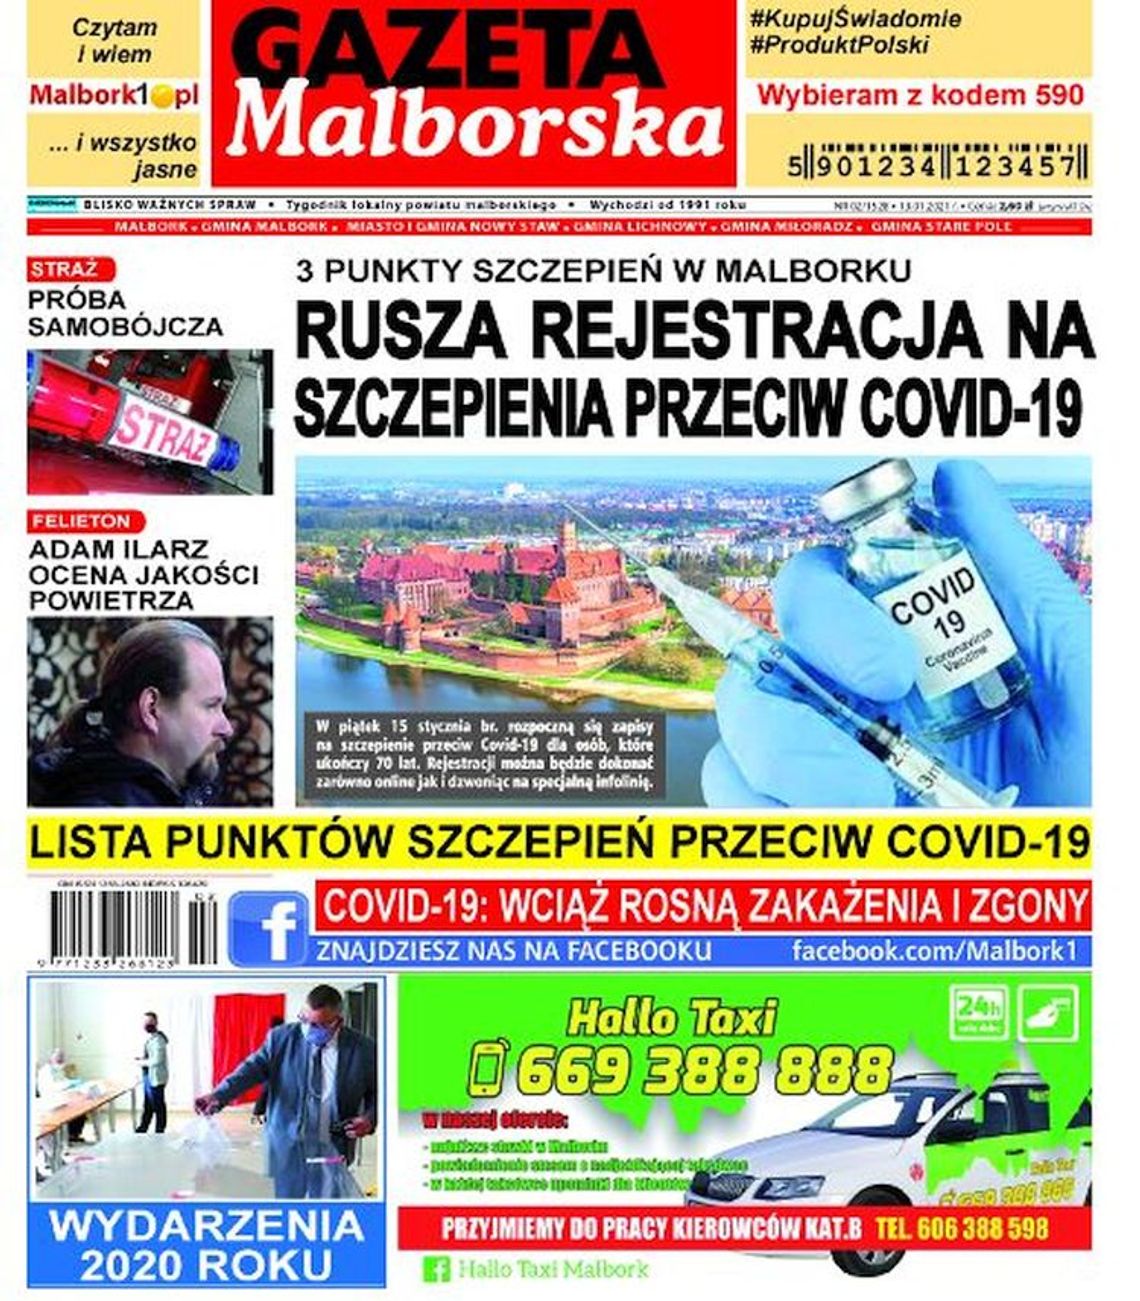 Najnowszy numer Gazety Malborskiej już w sprzedaży. Świeże informacje z Malborka i okolic naszego powiatu w Twoim kiosku. Co w środku?